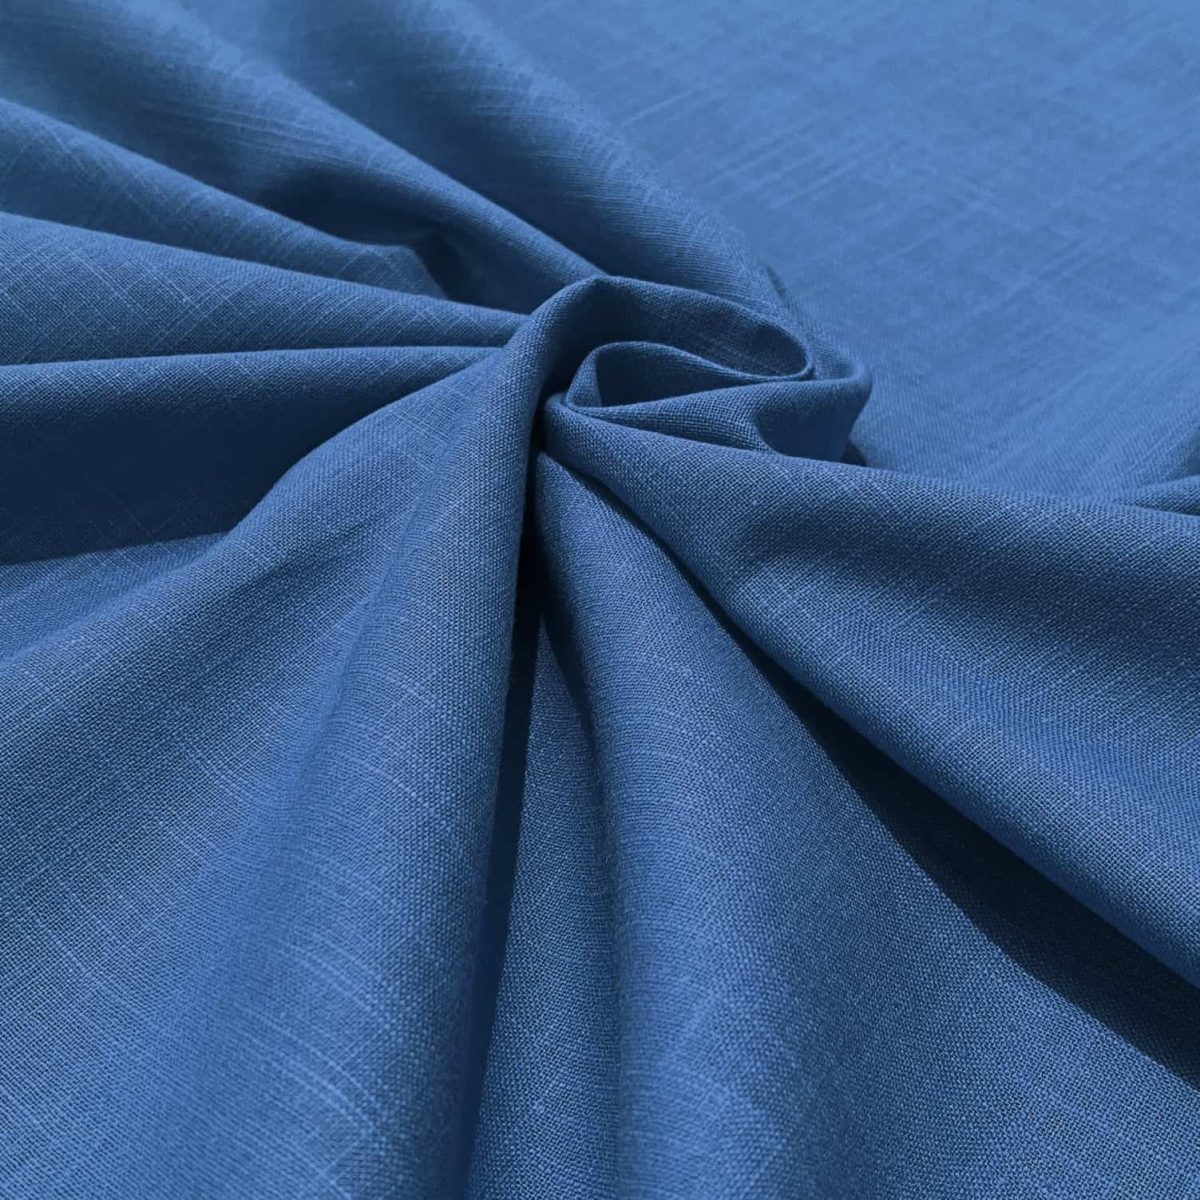 birlik1952 şantuklu pamuk keten flamlı şantuk elbiselik gömleklik kumaş shantung linen cotton shirt whosale denizli fabric indigo mavi blue